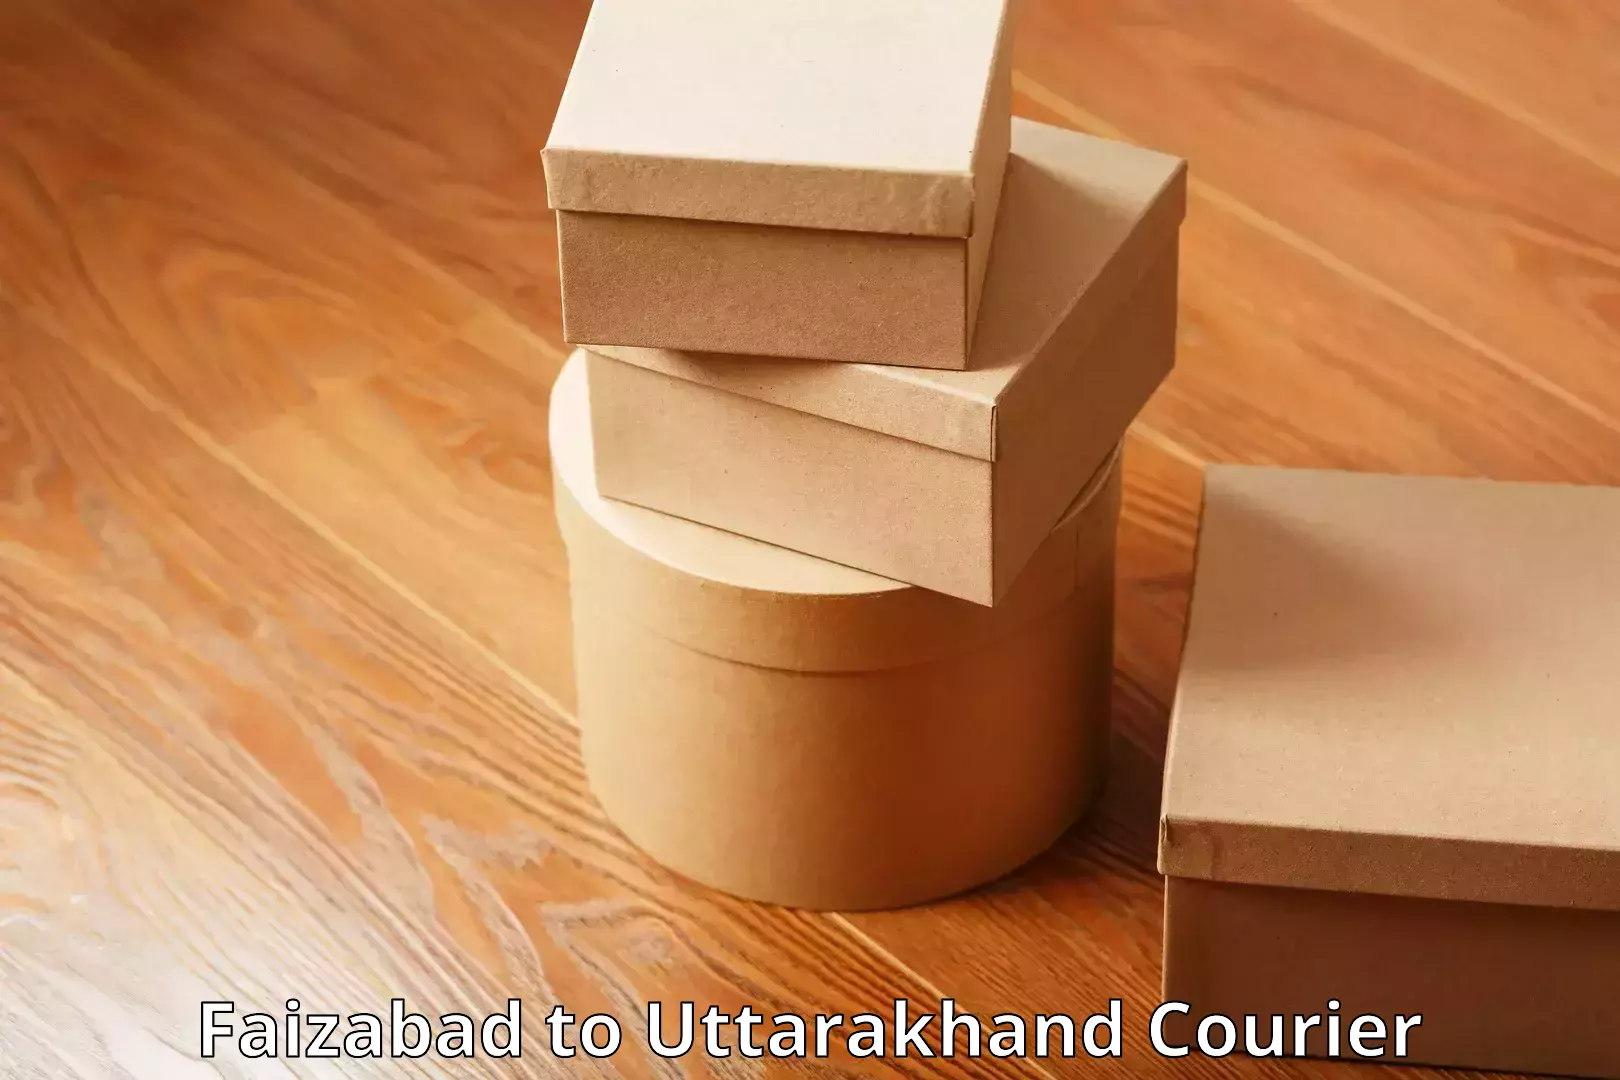 Luggage shipment specialists Faizabad to Uttarakhand